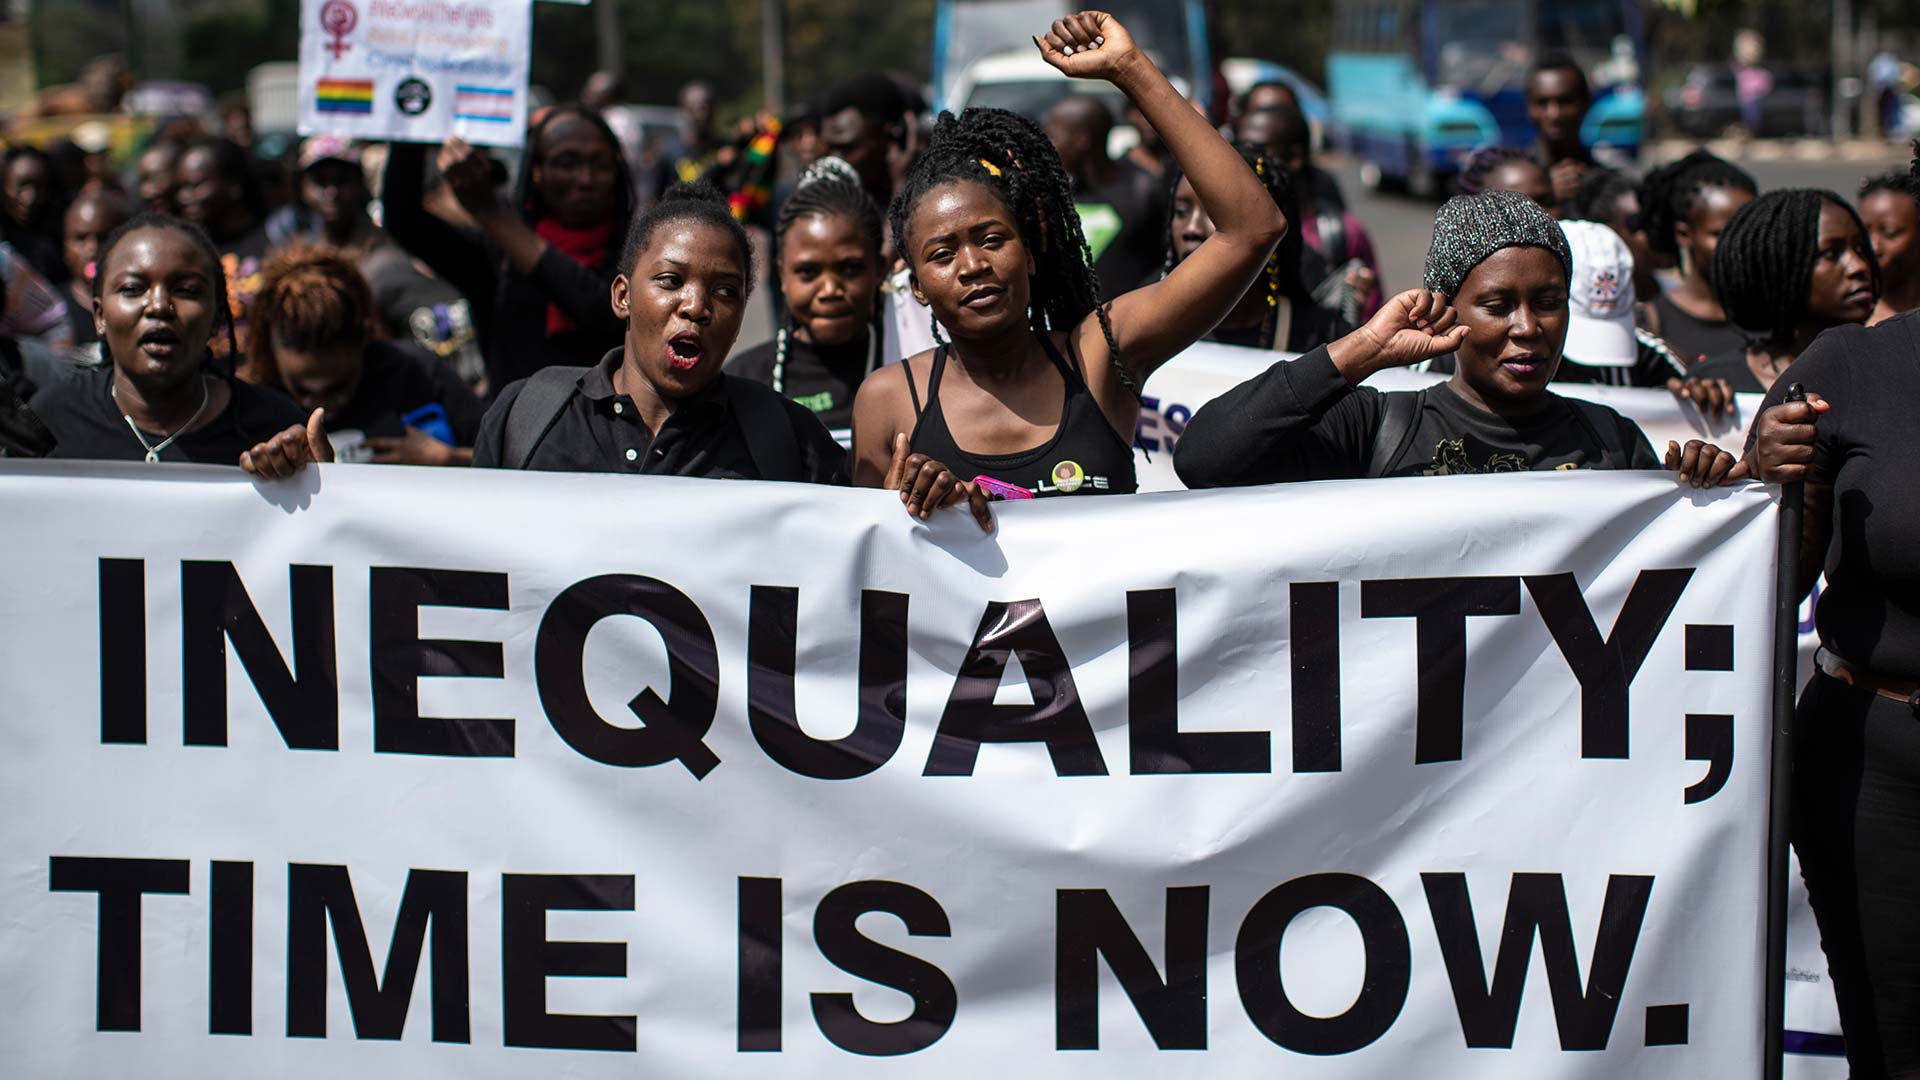 OXFAM alerta de que la desigualdad global es cada vez mayor a pesar de los avances sociales